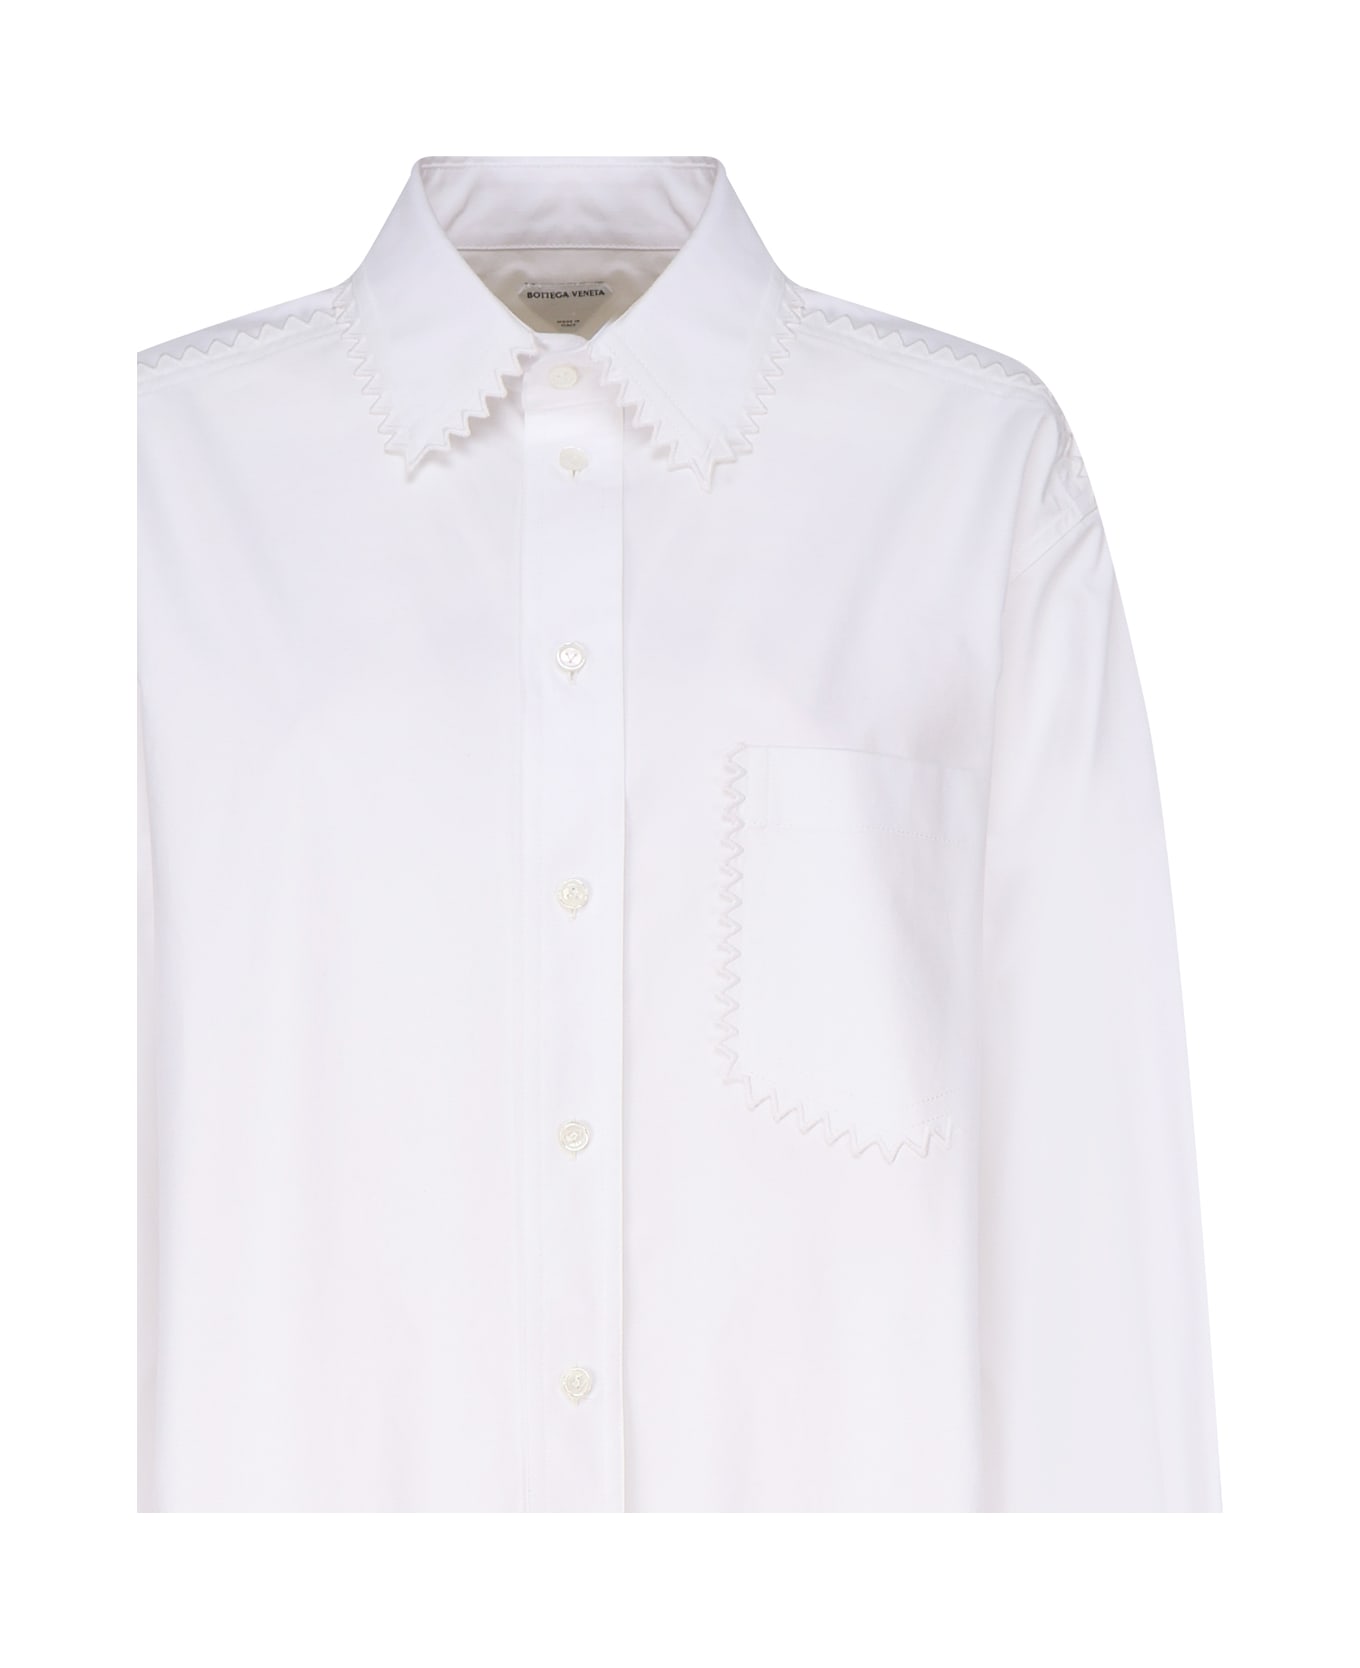 Bottega Veneta Oxford Shirt - White シャツ